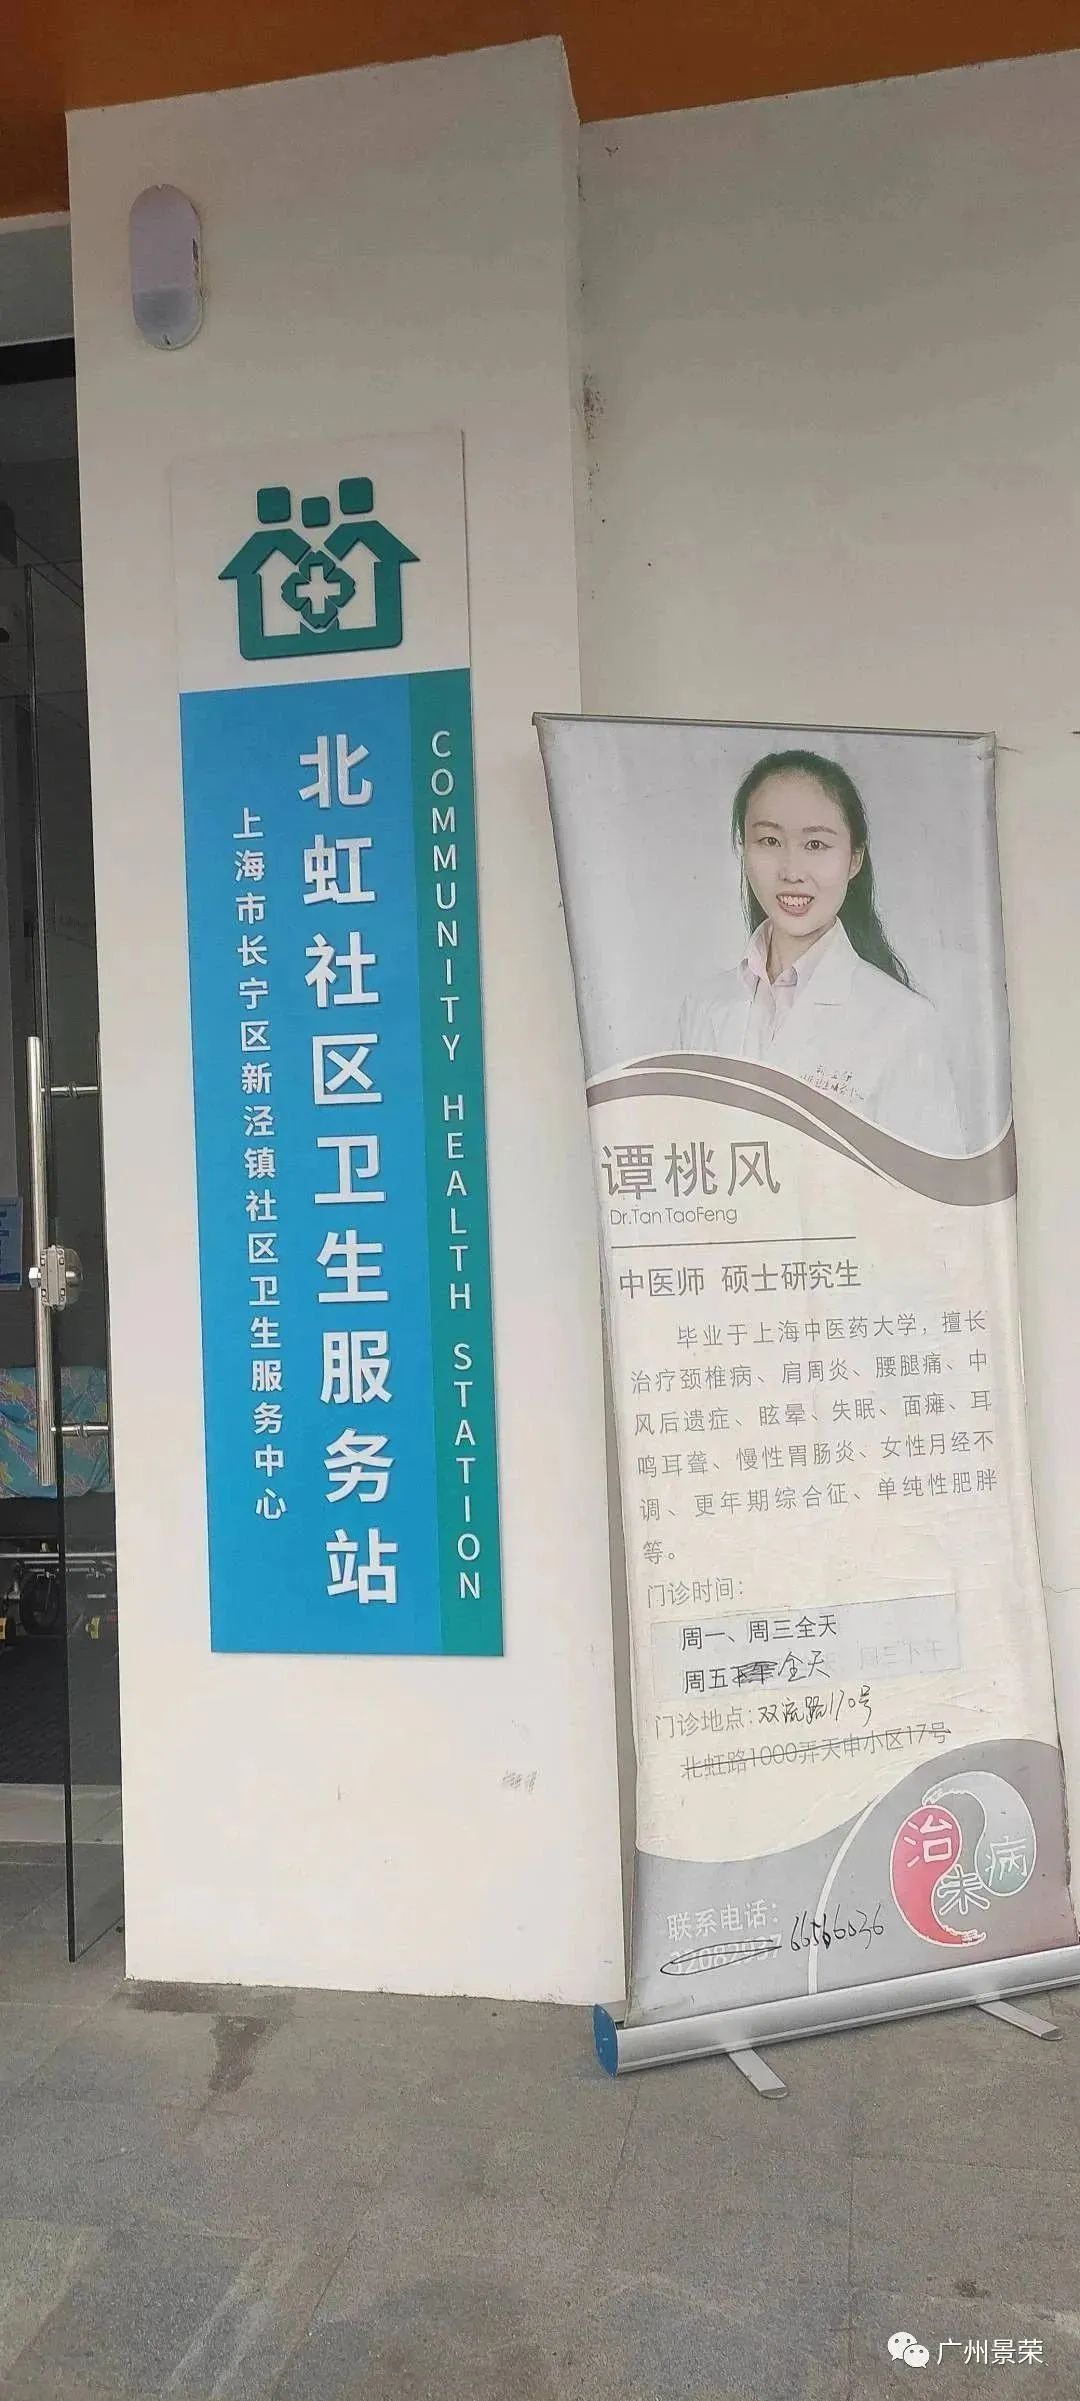 广州市康水科技有限责任公司_广州水处理设备厂_广州康郡水处理设备有限公司